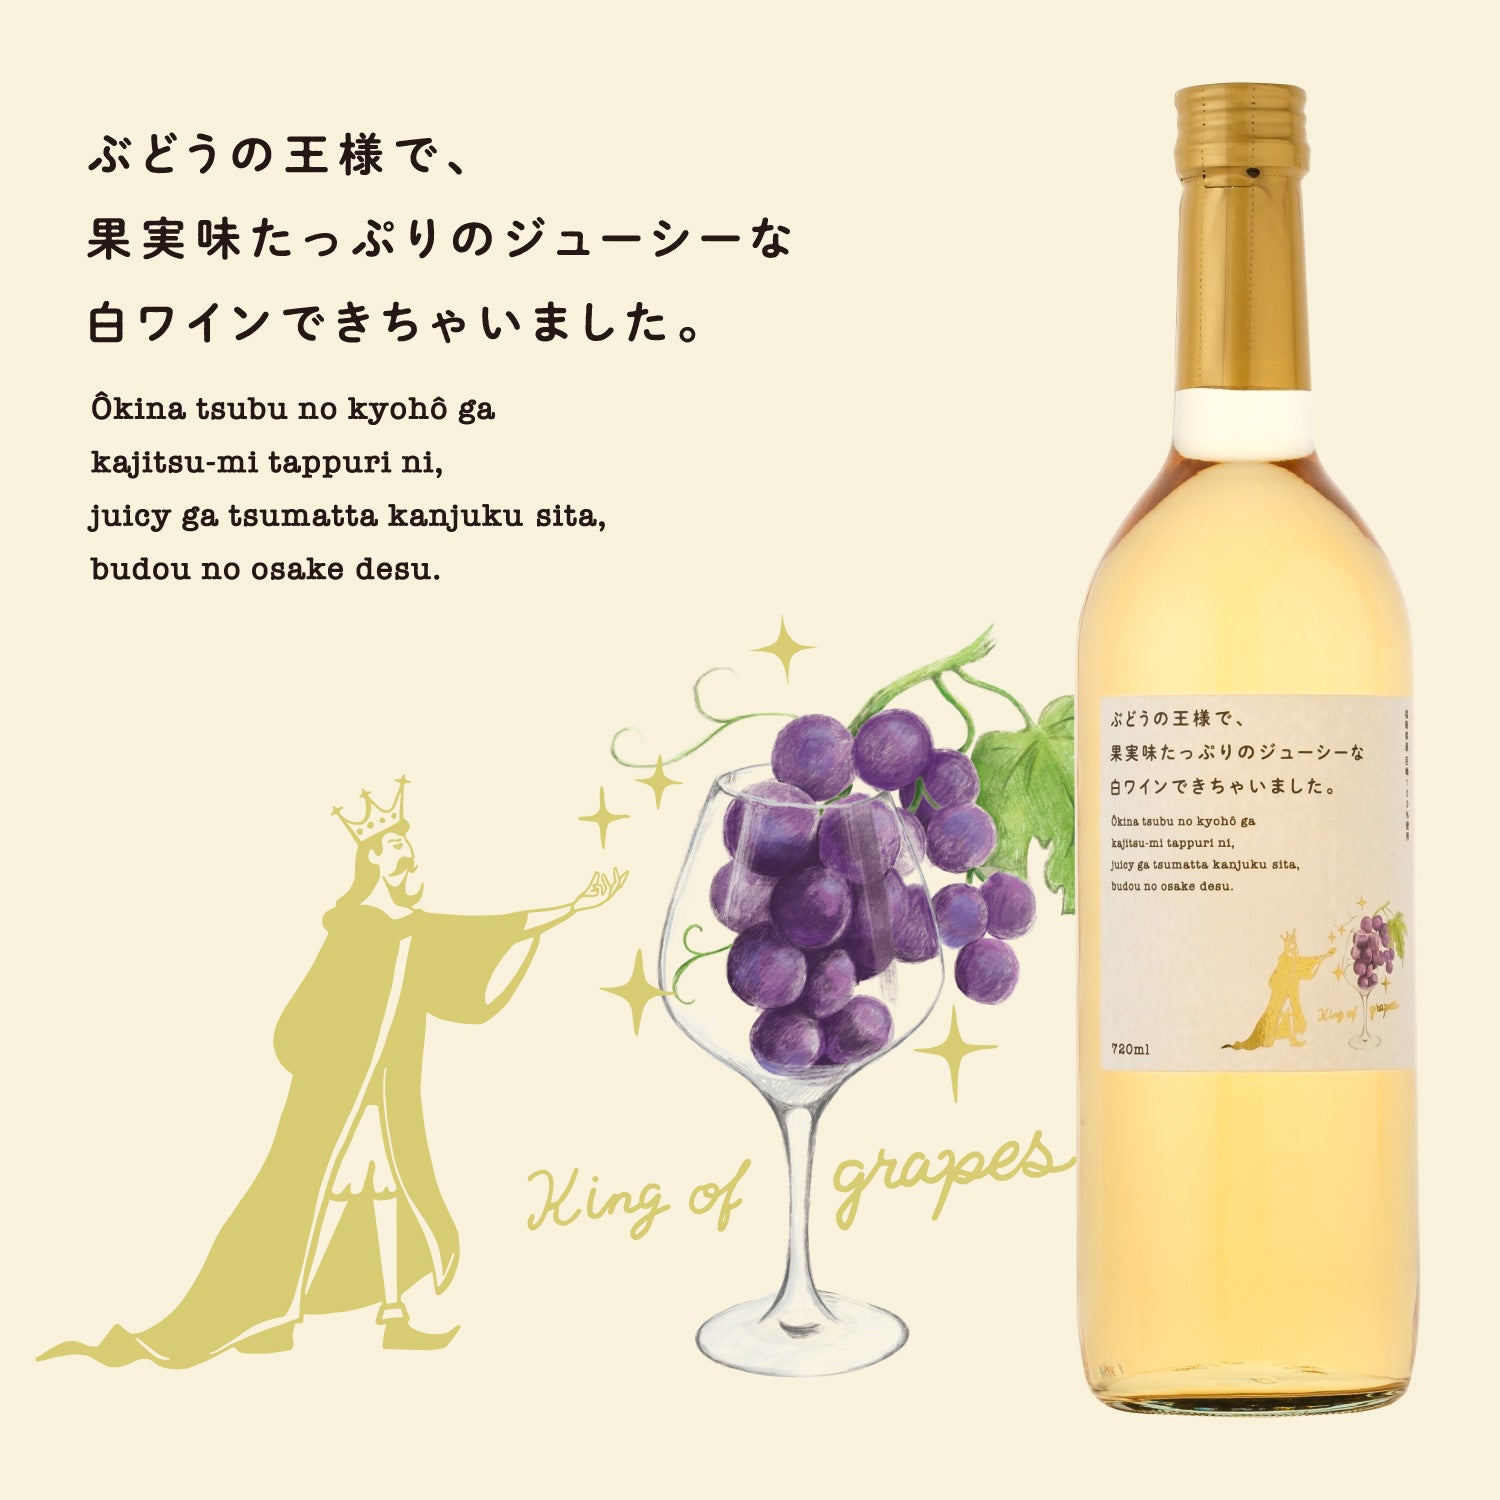 ぶどうの王様で、果実味たっぷりのジューシーな白ワインできちゃいました。 福岡県のワイン 酒・日本酒の通販ならKURAND（クランド）